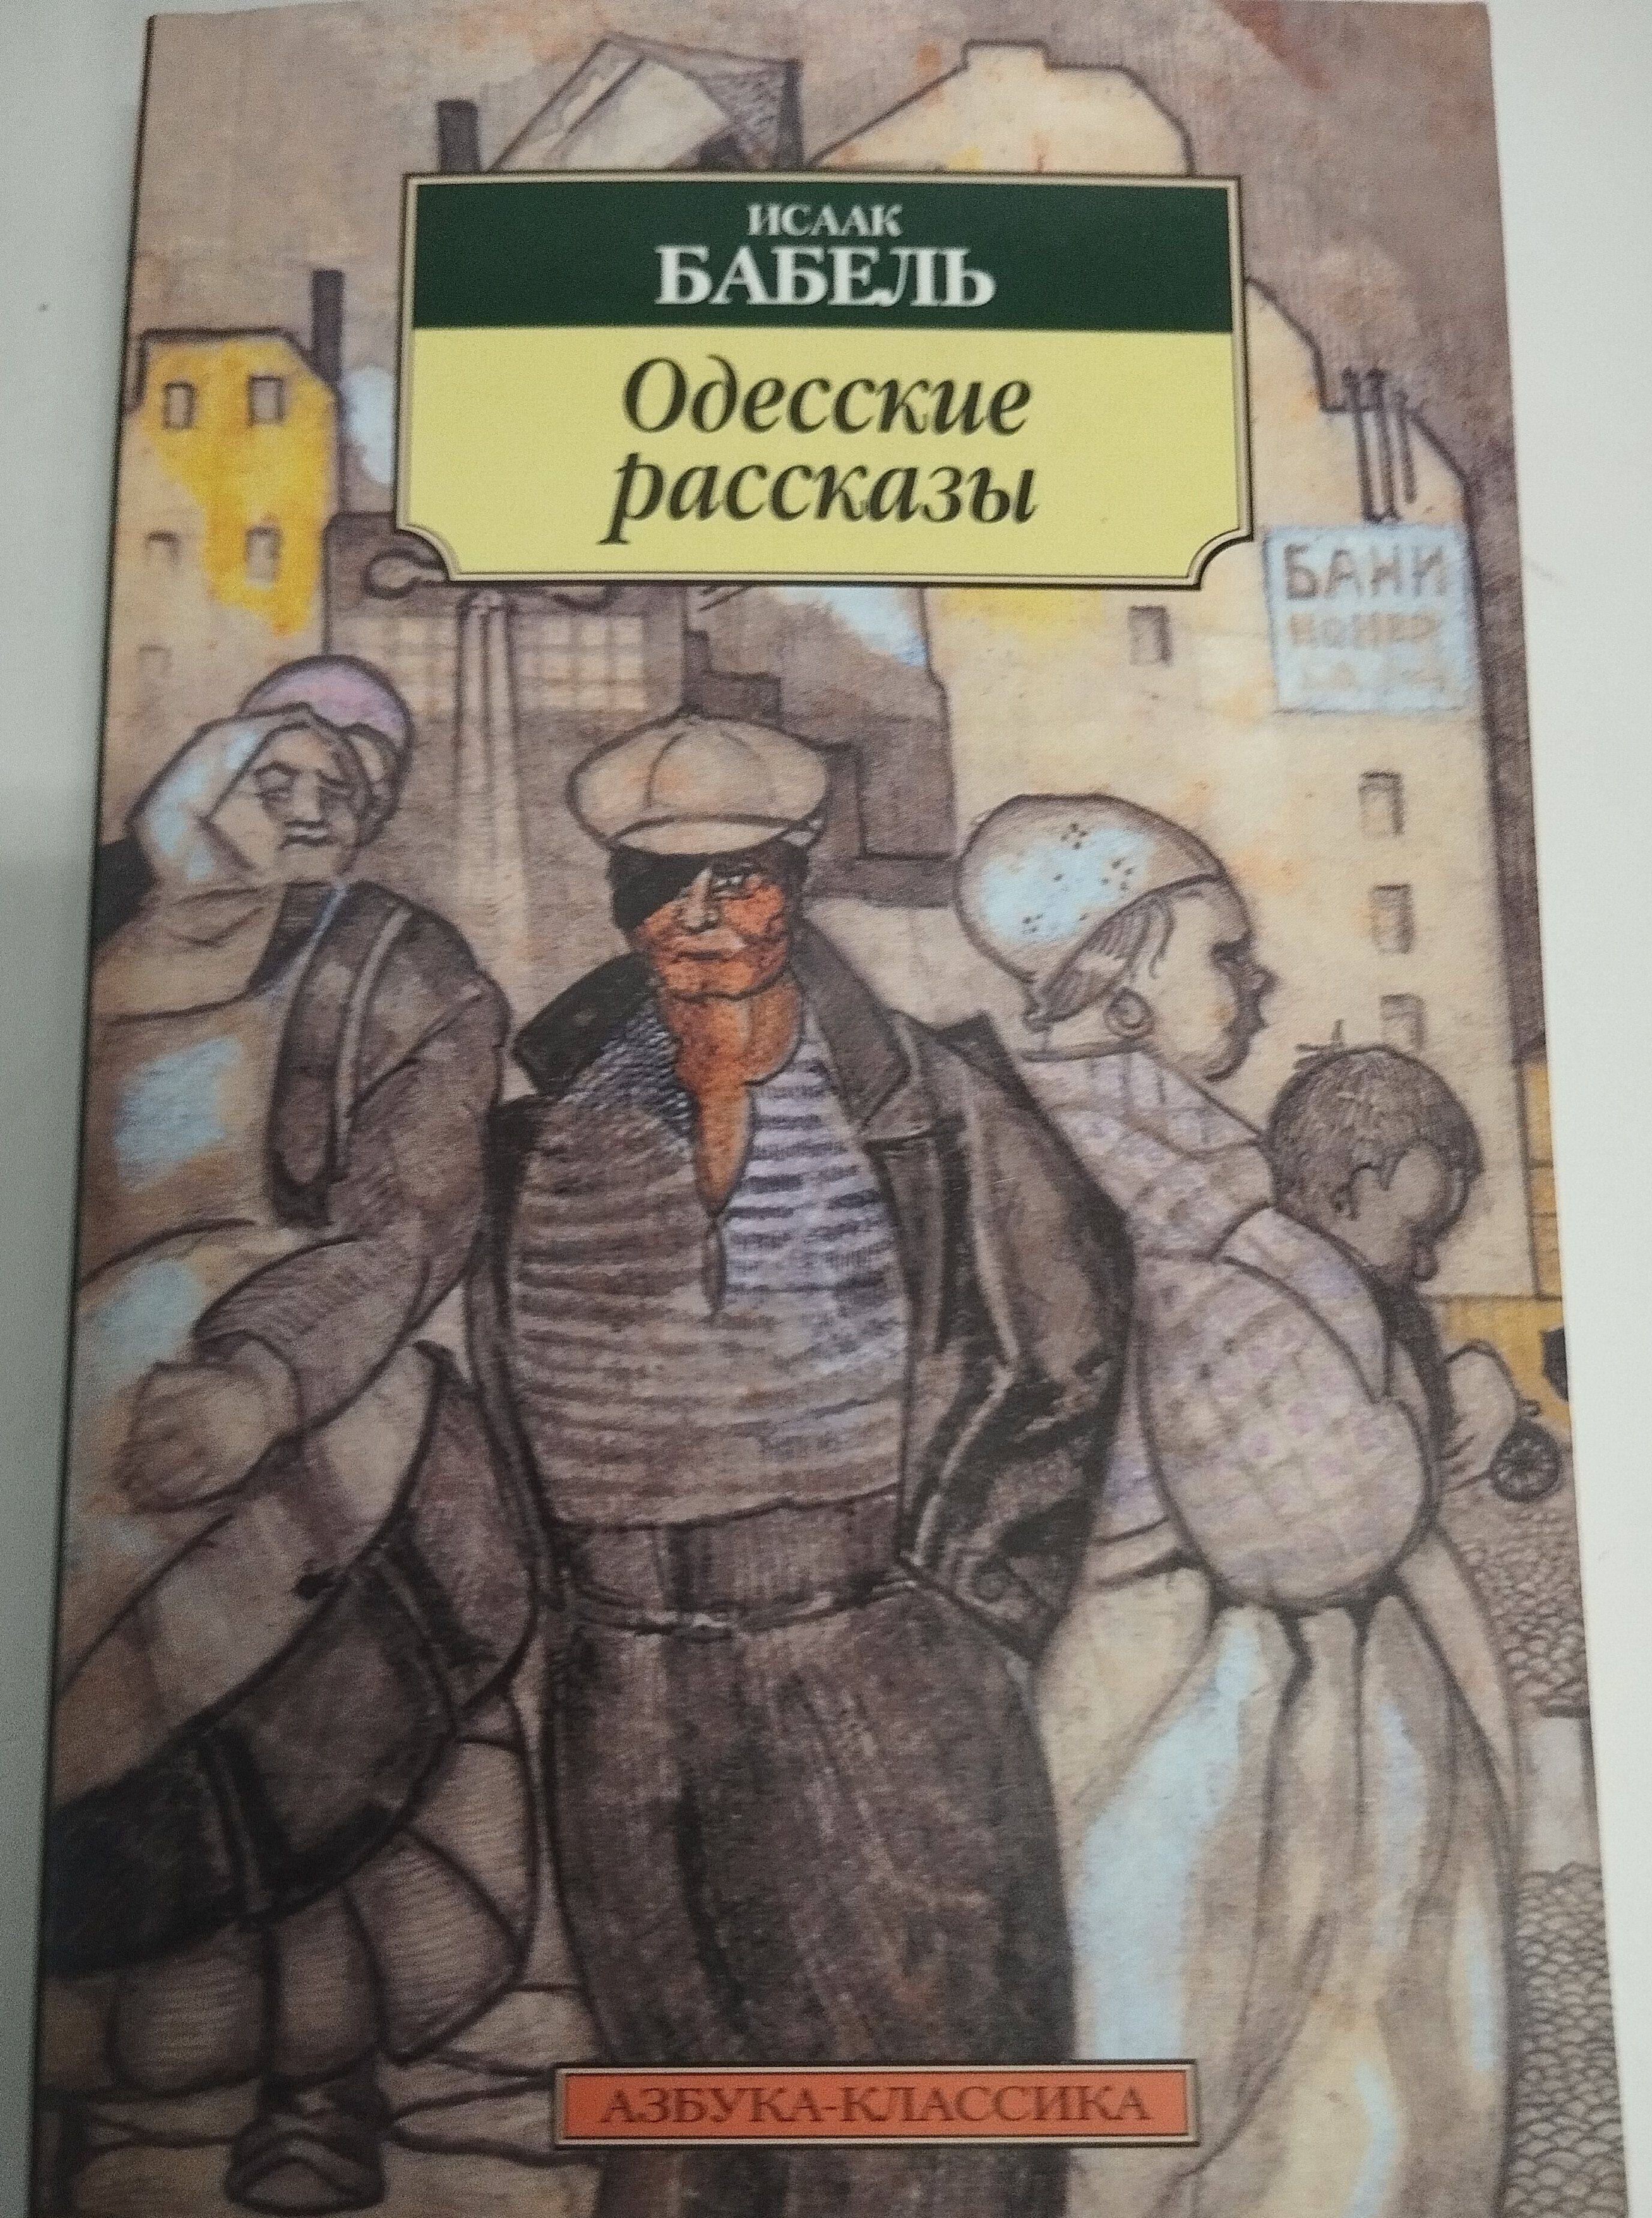 Книга одесские рассказы. Одесские рассказы. Бабель и.. Одесские рассказы Бабеля пересказ закат.